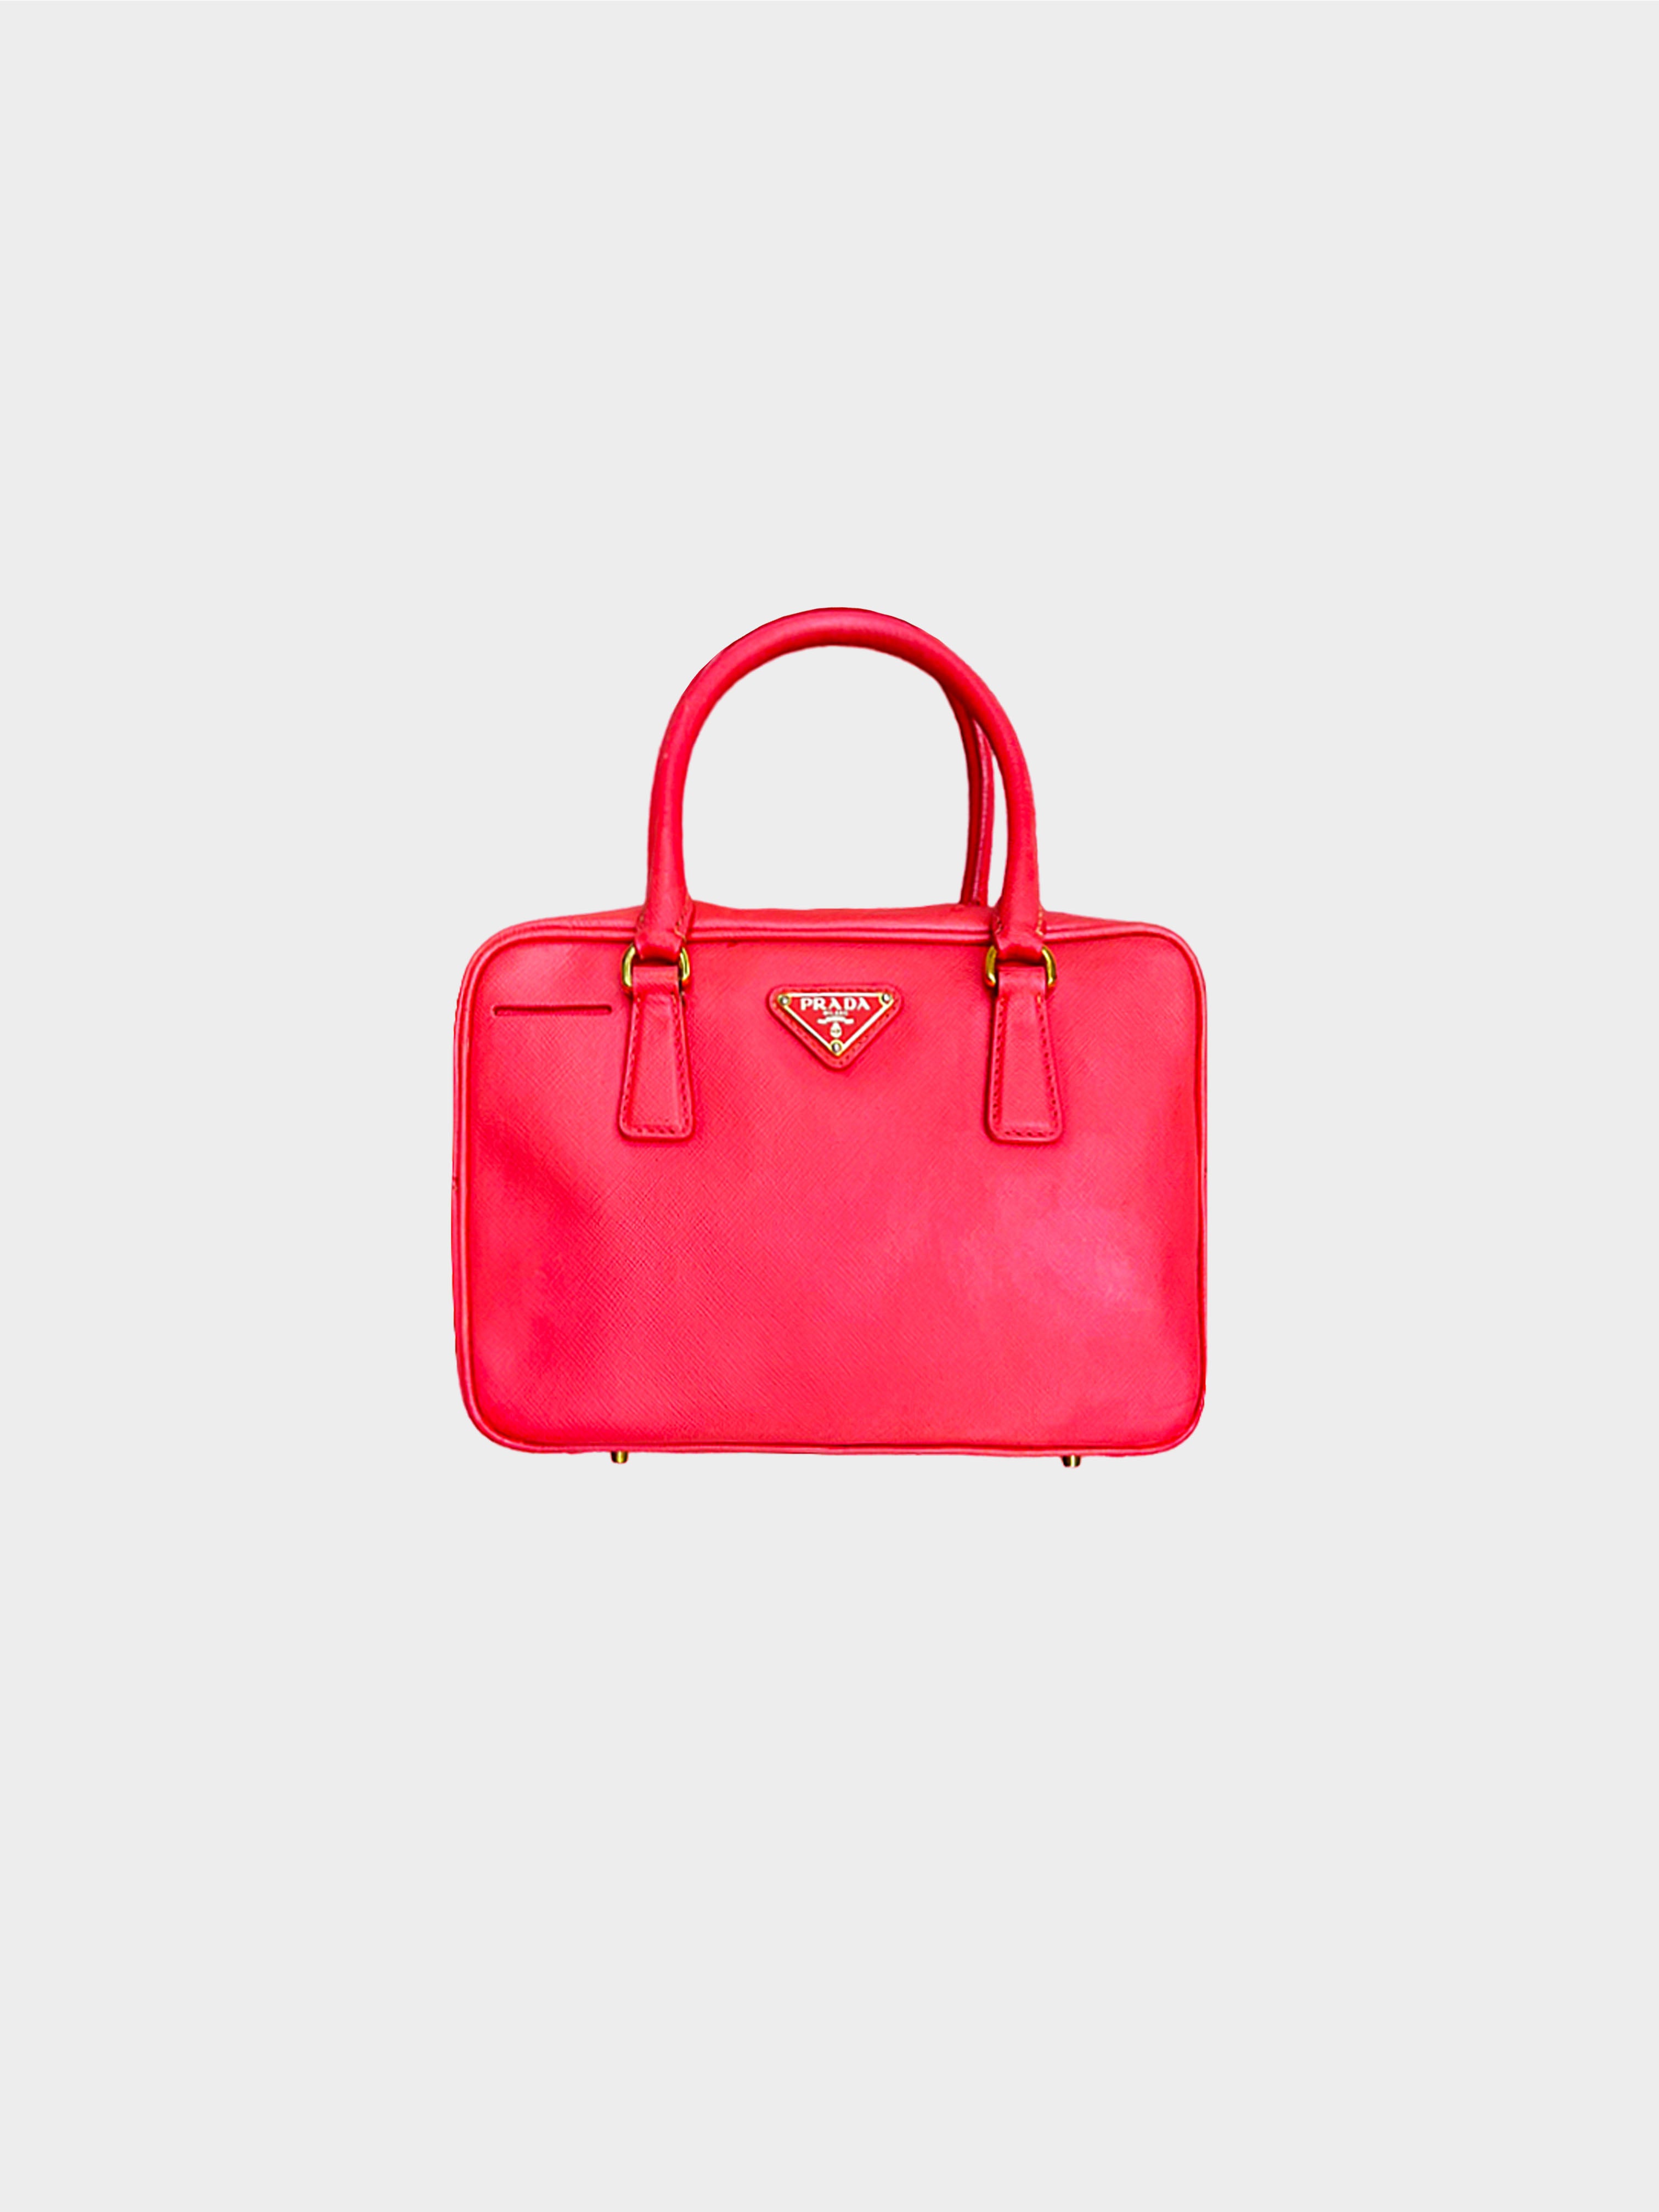 Prada Bauletto Saffiano Leather Handbag